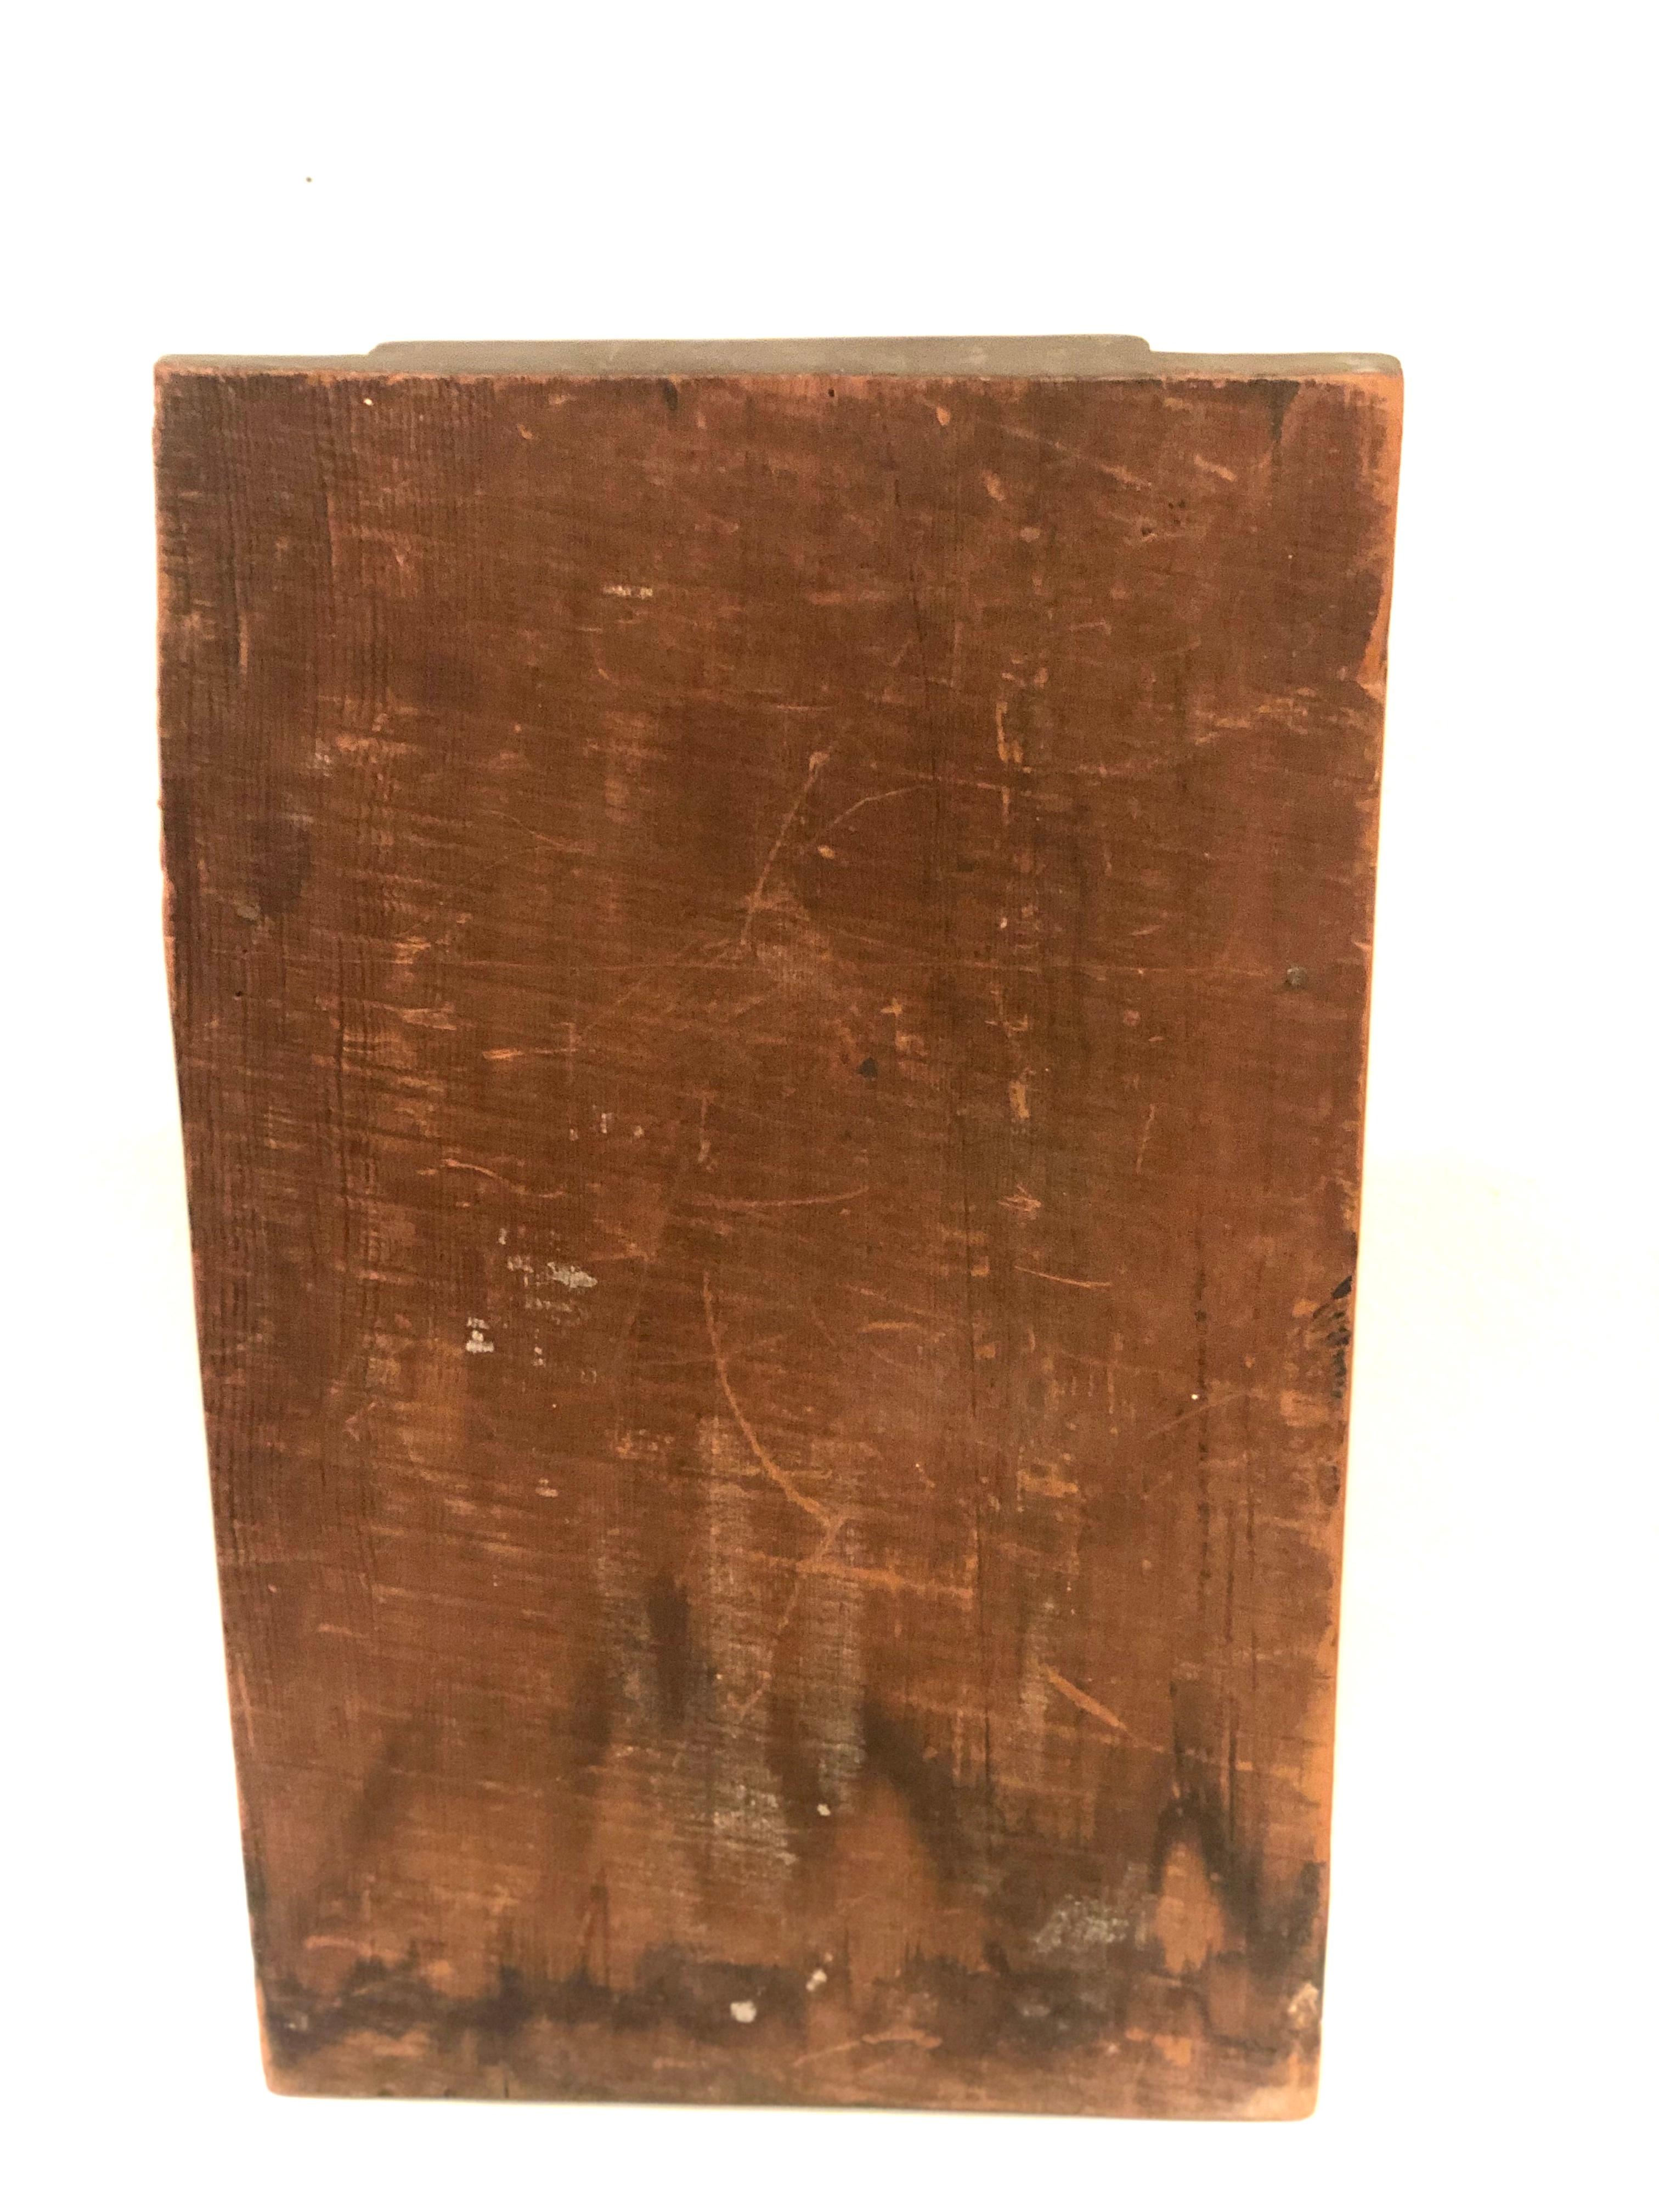 wooden jesus plaque